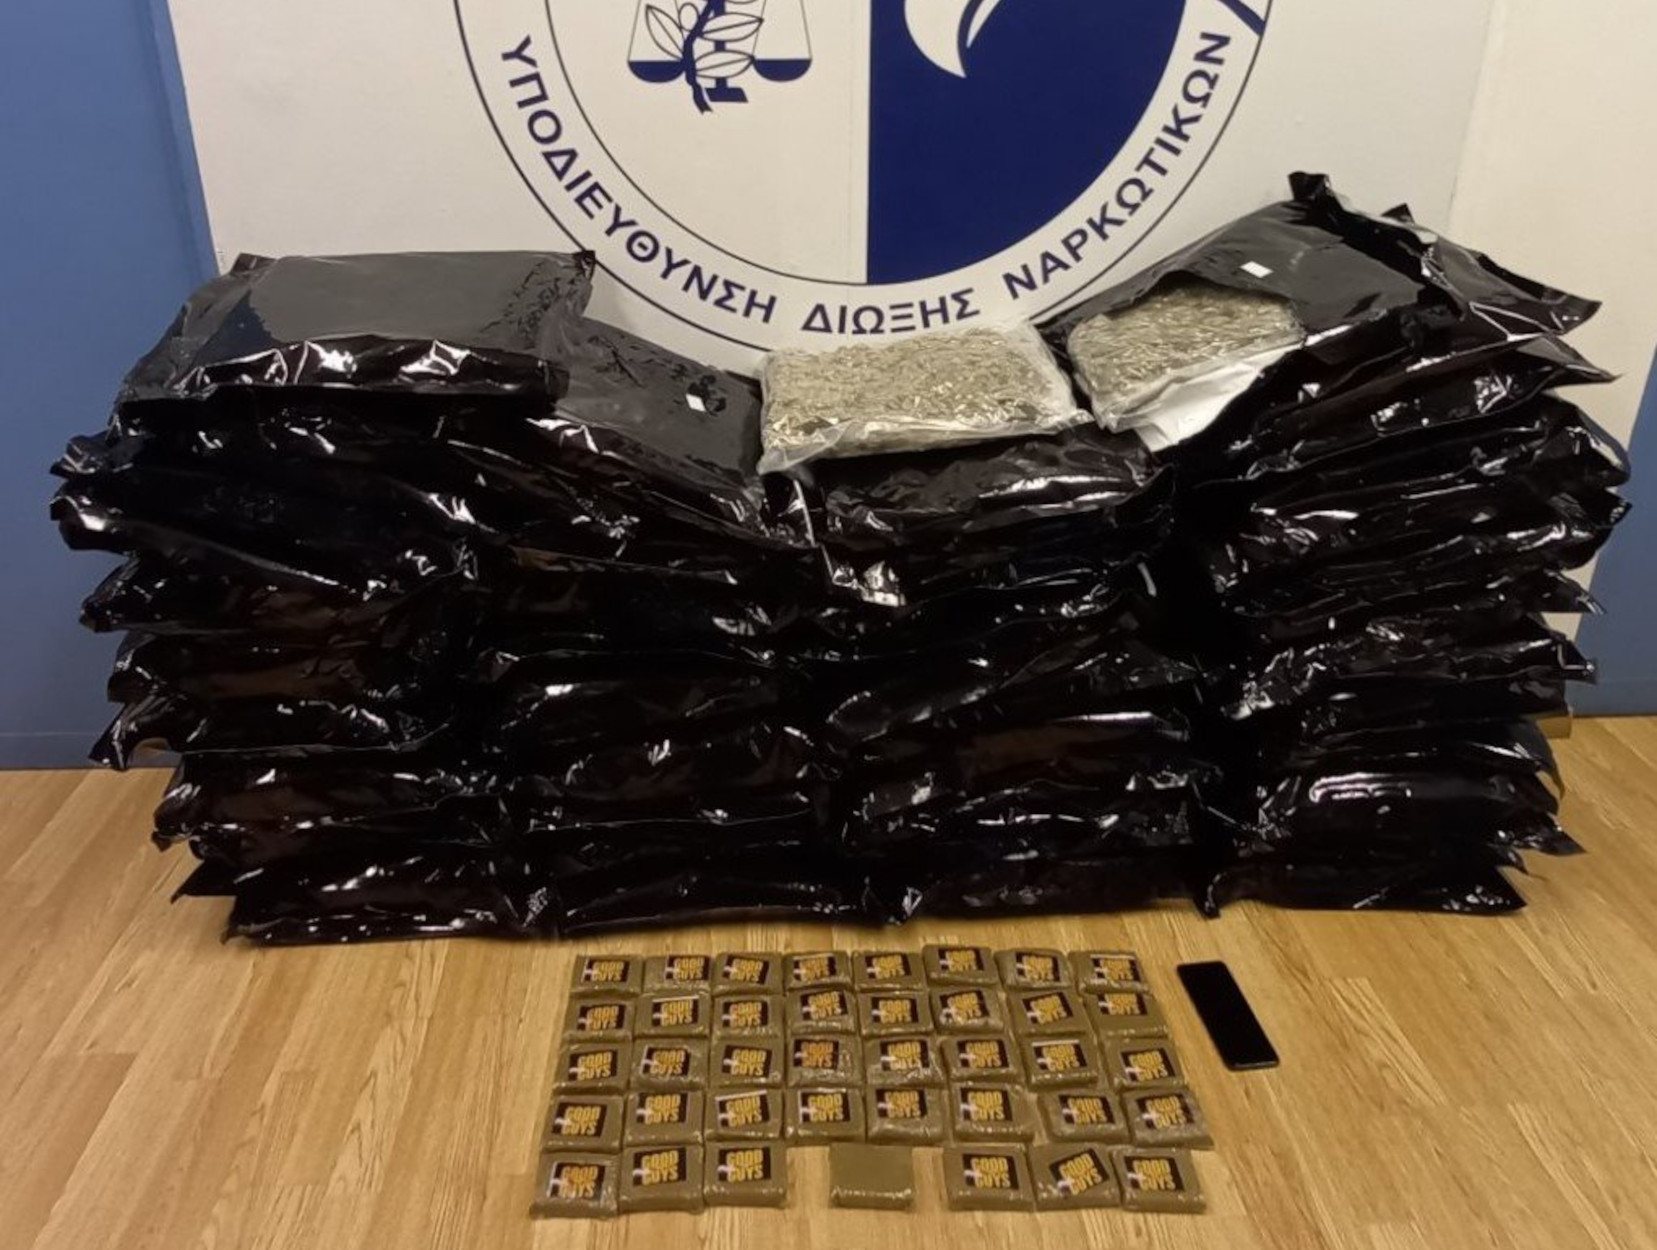 Πάτρα: Προσπάθησε να περάσει 58 κιλά ναρκωτικά μέσα σε… κούτες από πλακάκια αλλά τον εντόπισαν και συνελήφθη (photos)